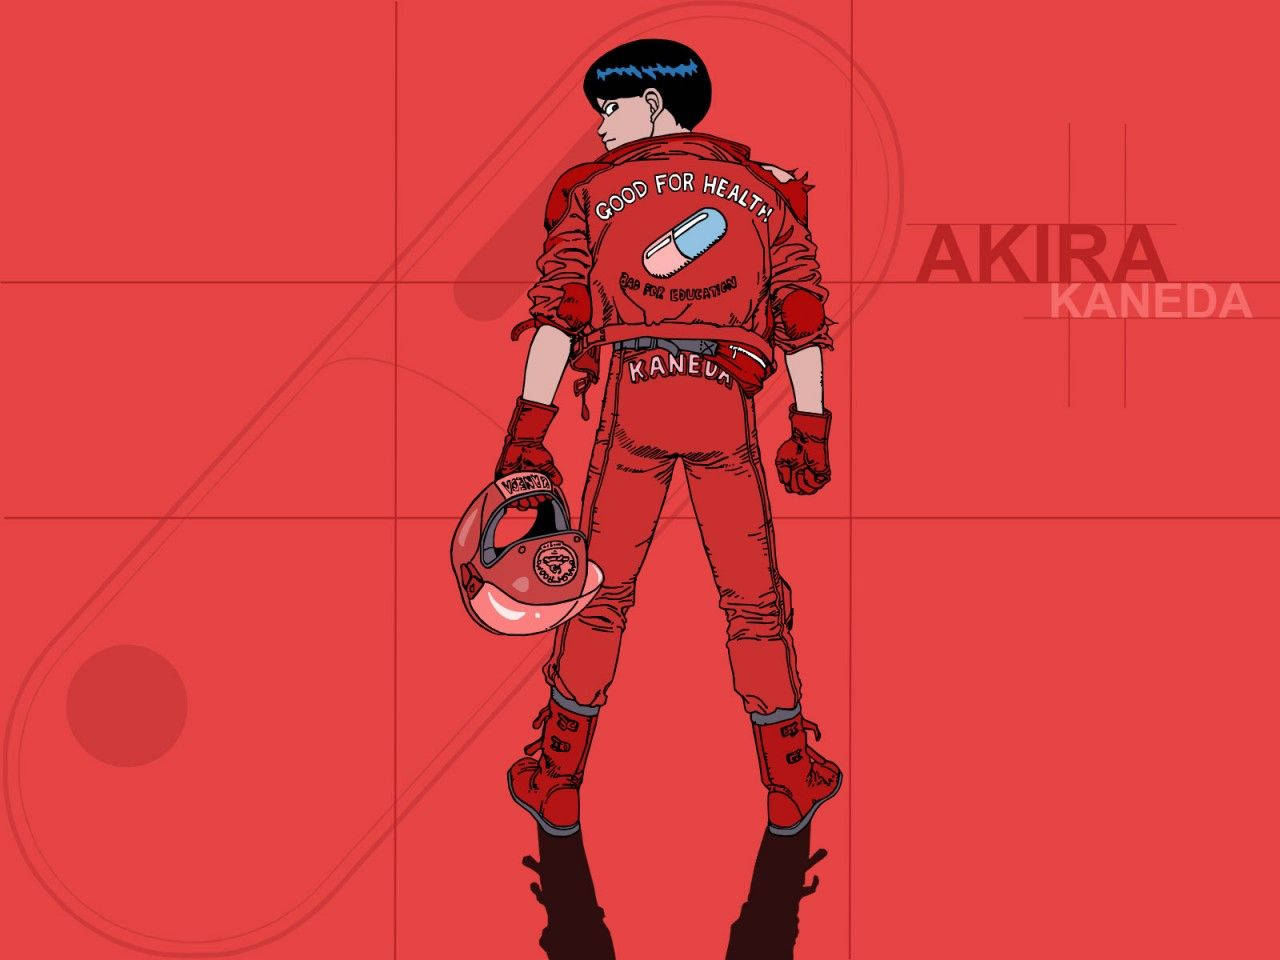 Akira 1280X960 Wallpaper and Background Image